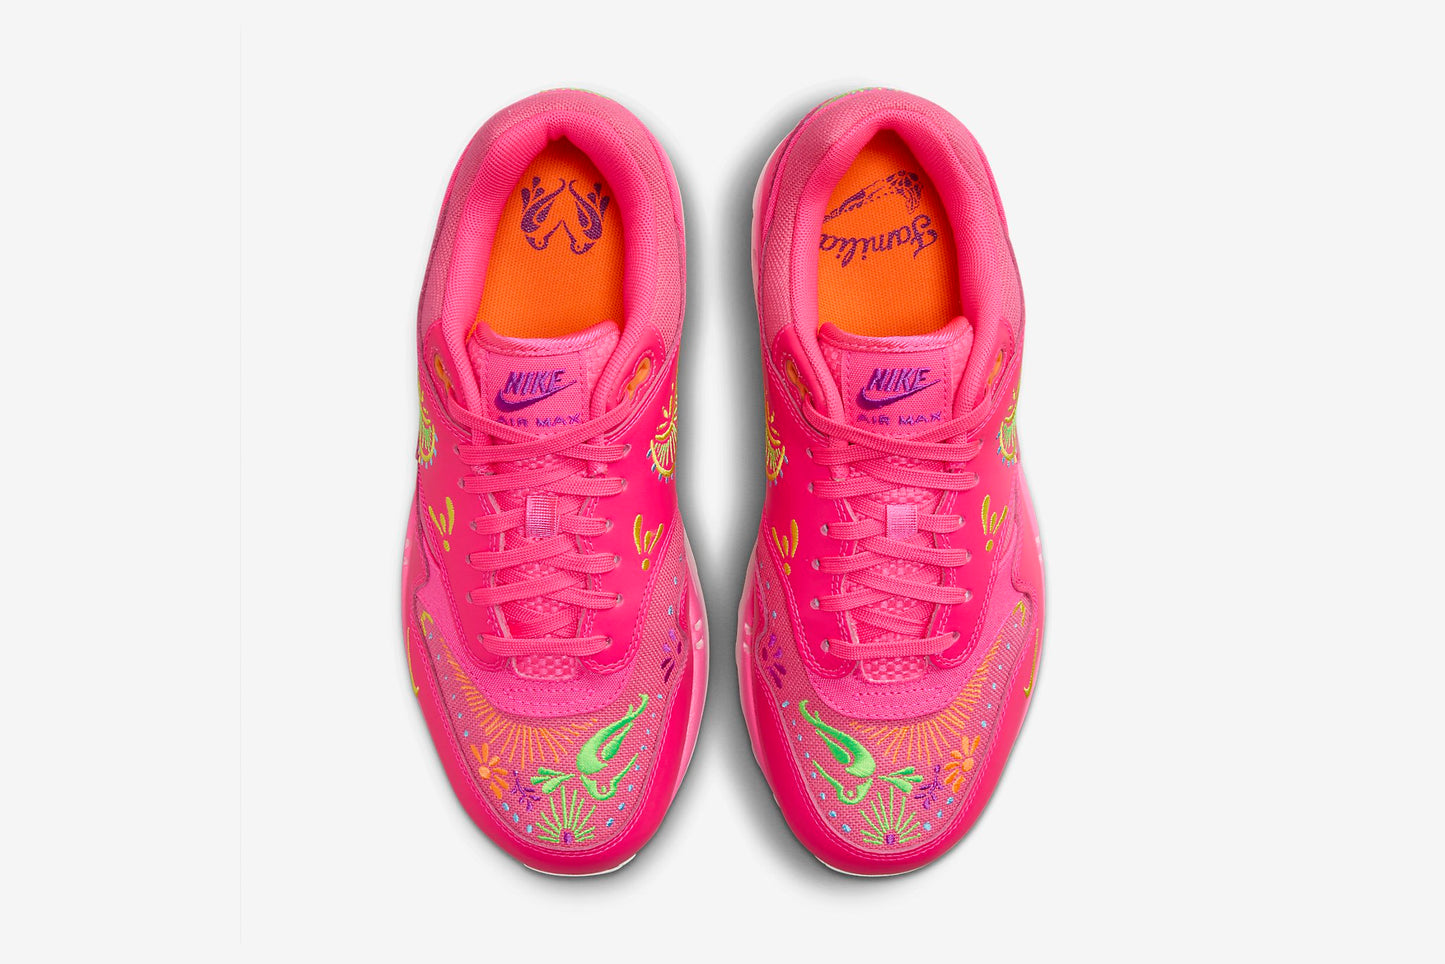 Nike "Air Max 1 PRM" M - Hyper Pink / Sail - Opti Yellow